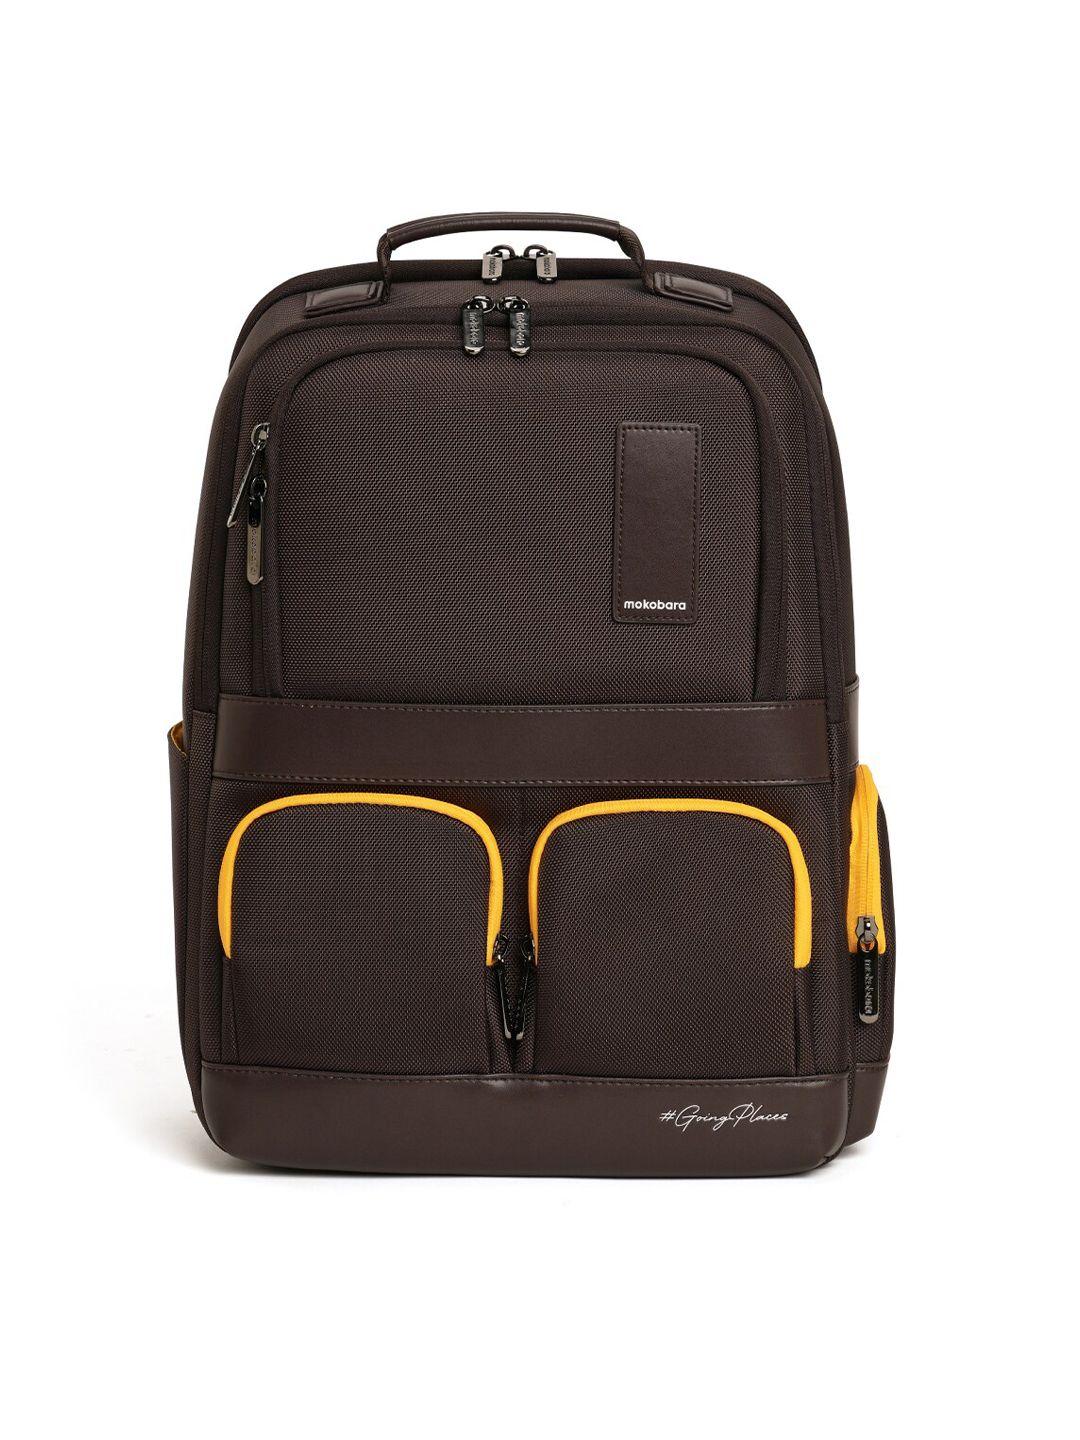 mokobara unisex brown & yellow backpack